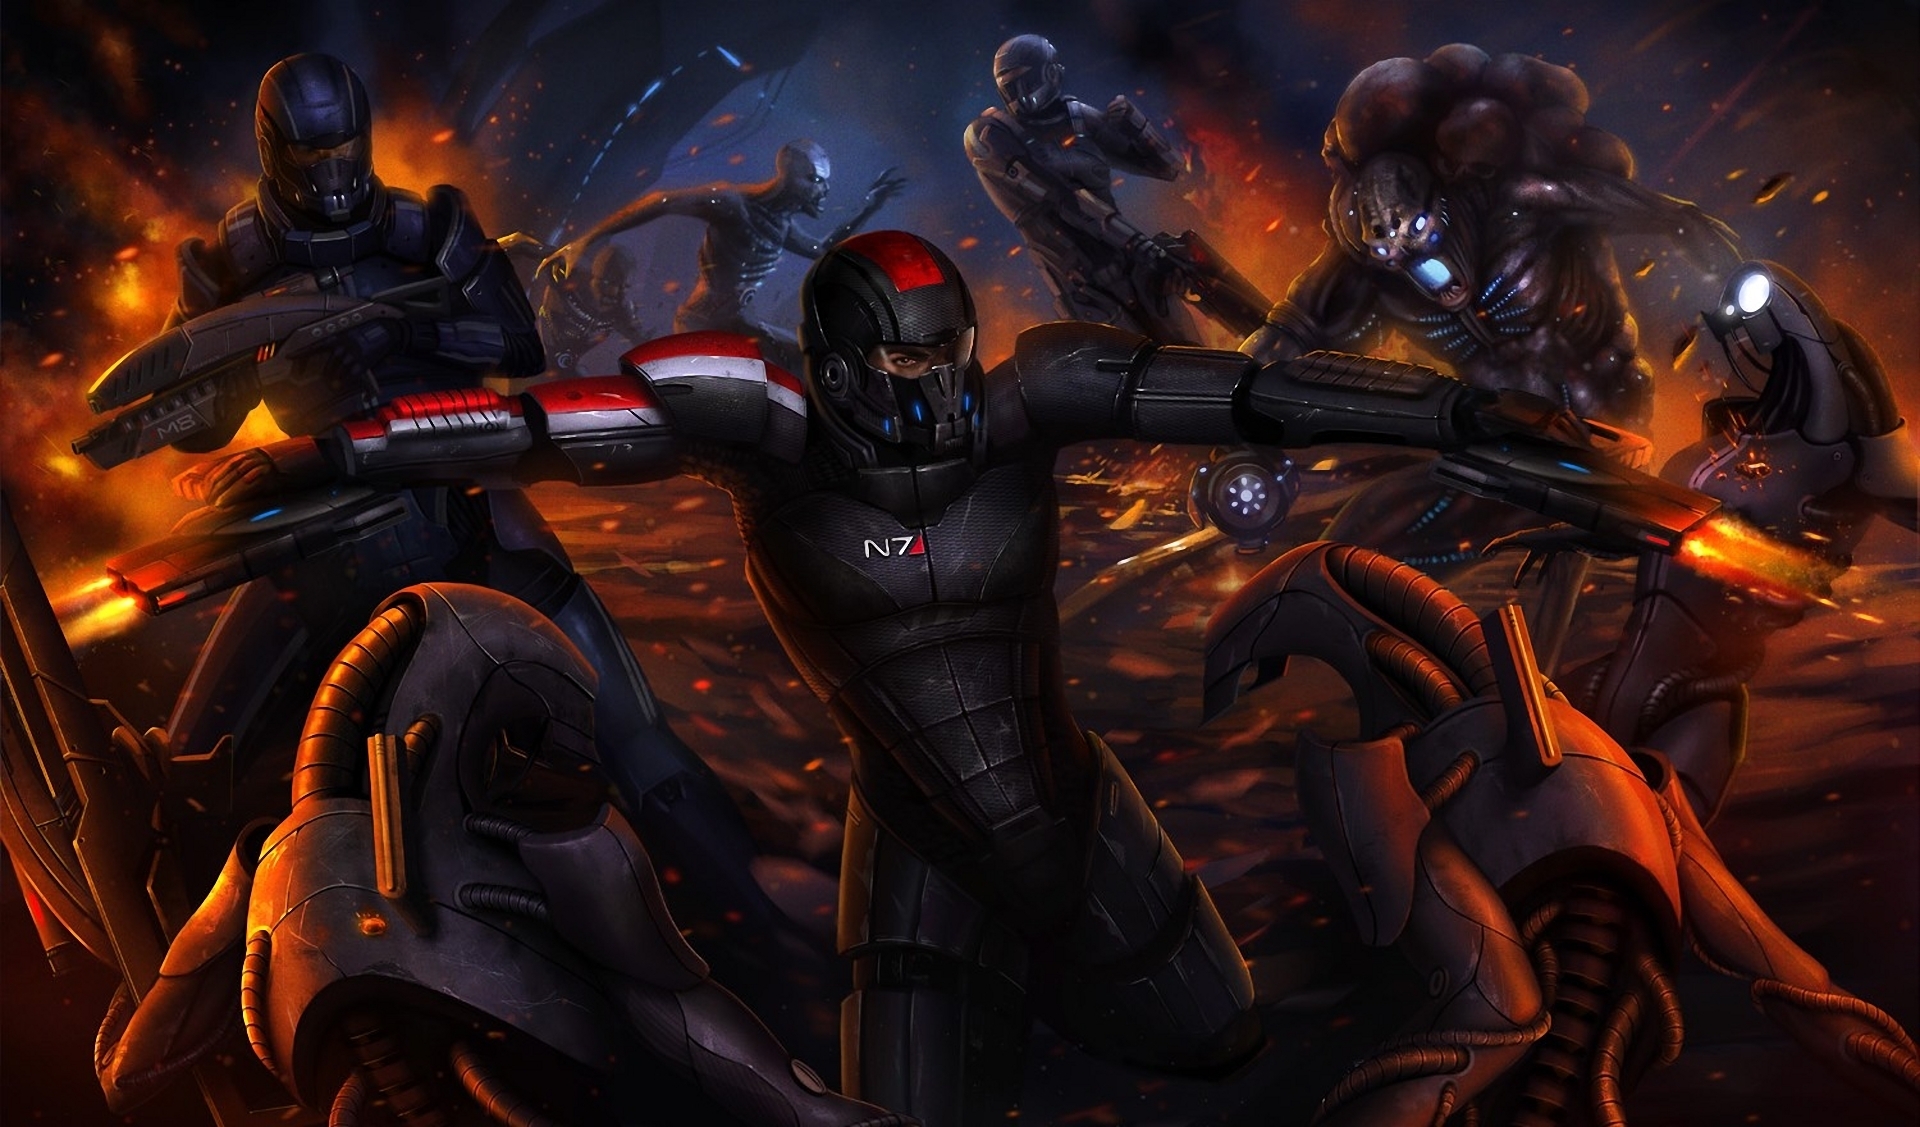 Descarga gratuita de fondo de pantalla para móvil de Mass Effect 3, Mass Effect, Robot, Batalla, Videojuego.